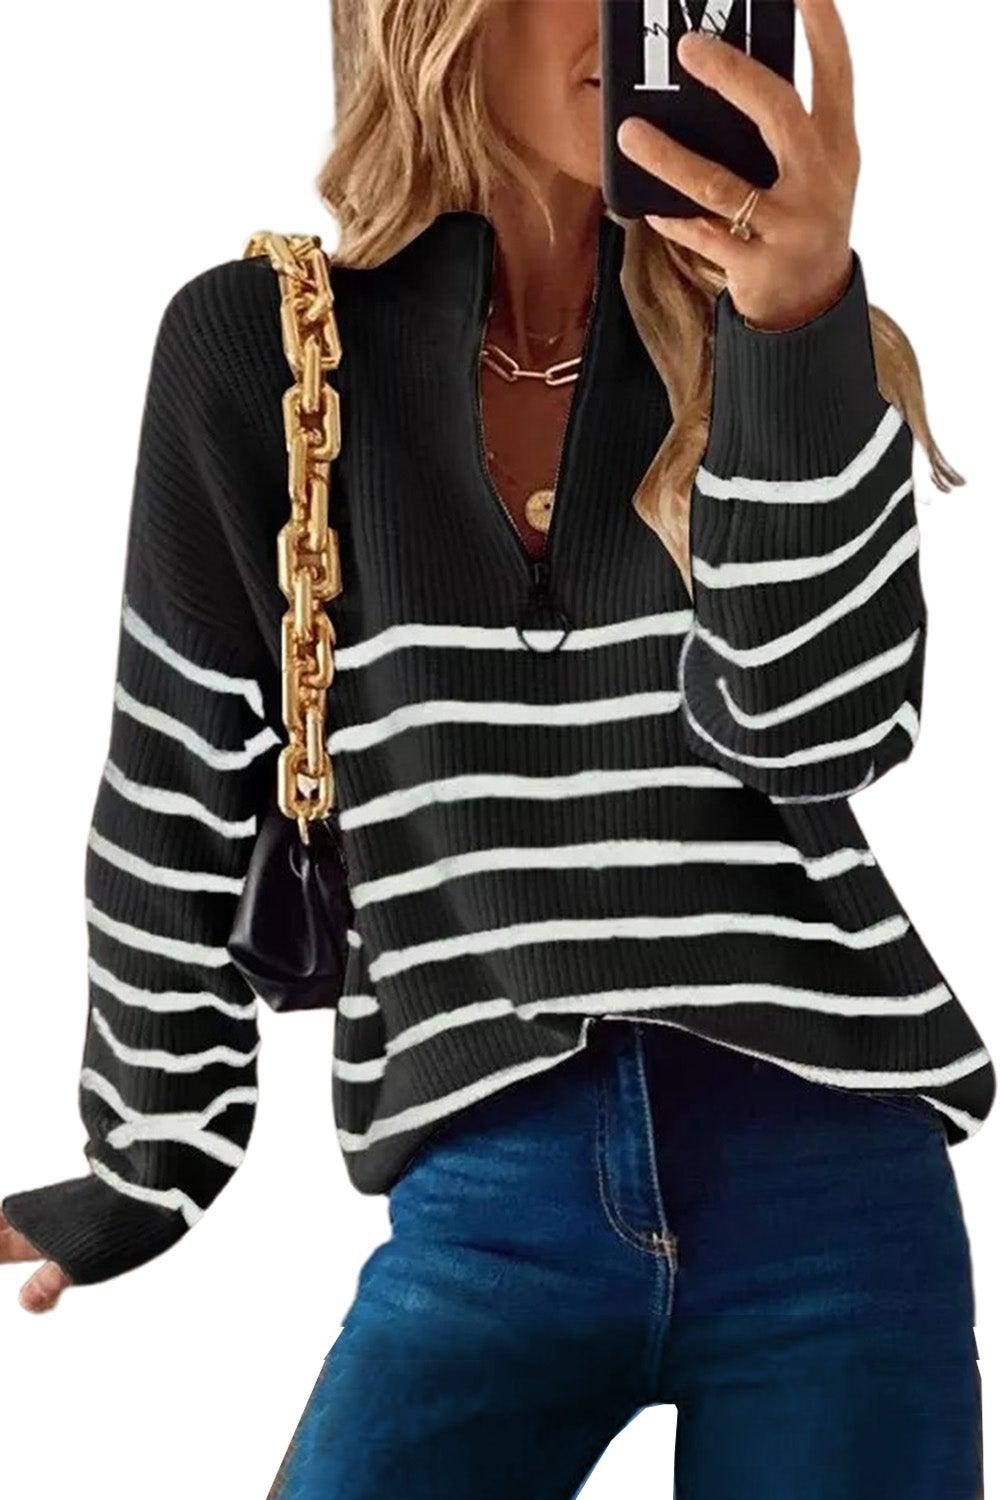 Beige Striped Zipper Knit Sweater - L & M Kee, LLC